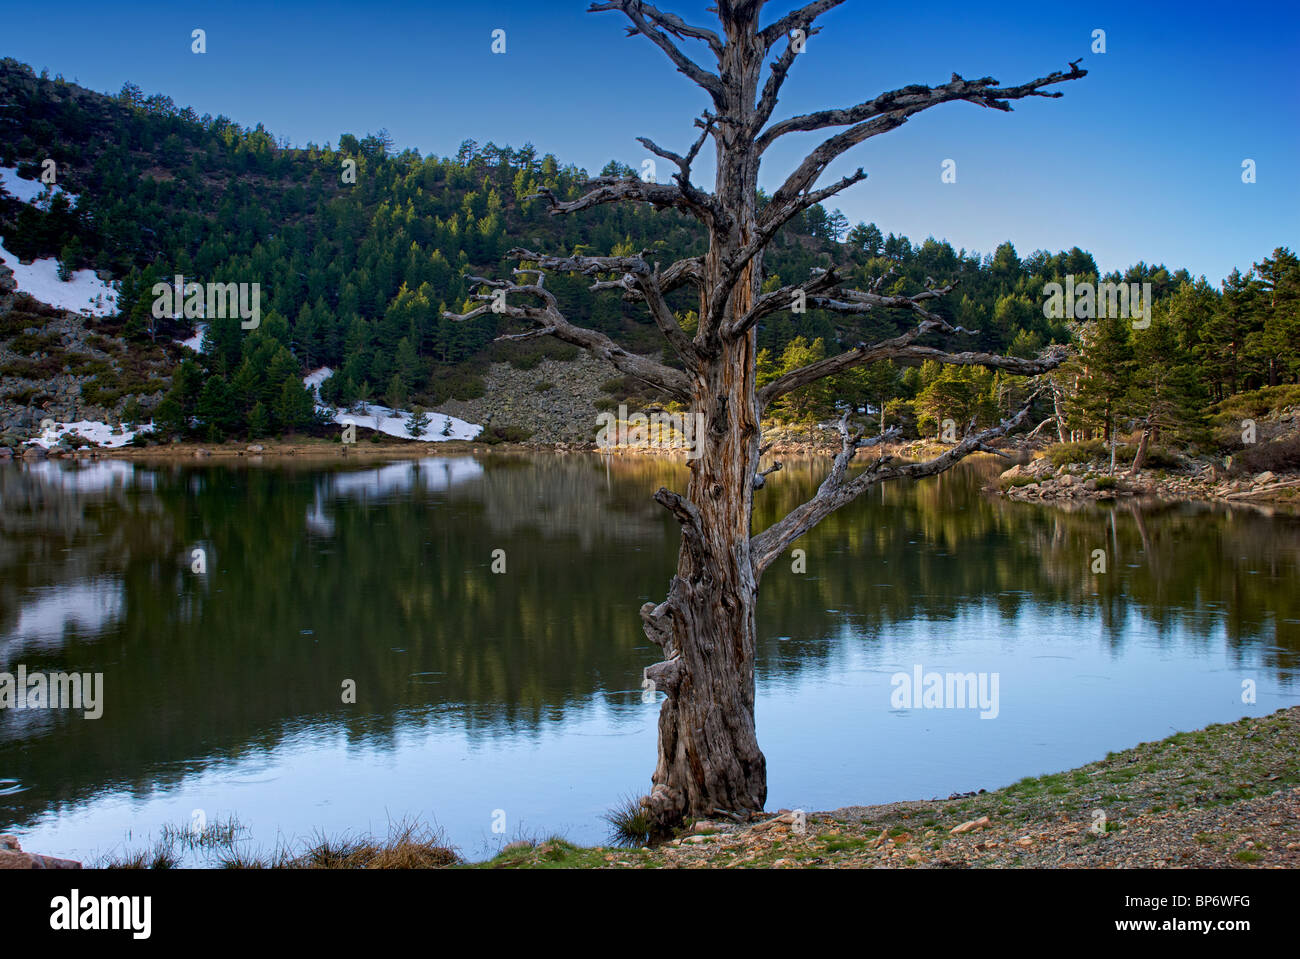 Dead Tree. Laguna de los Patos. Lagunas Glaciares de Neila Natural Park. Burgos province. Castilla y Leon. Spain. Stock Photo